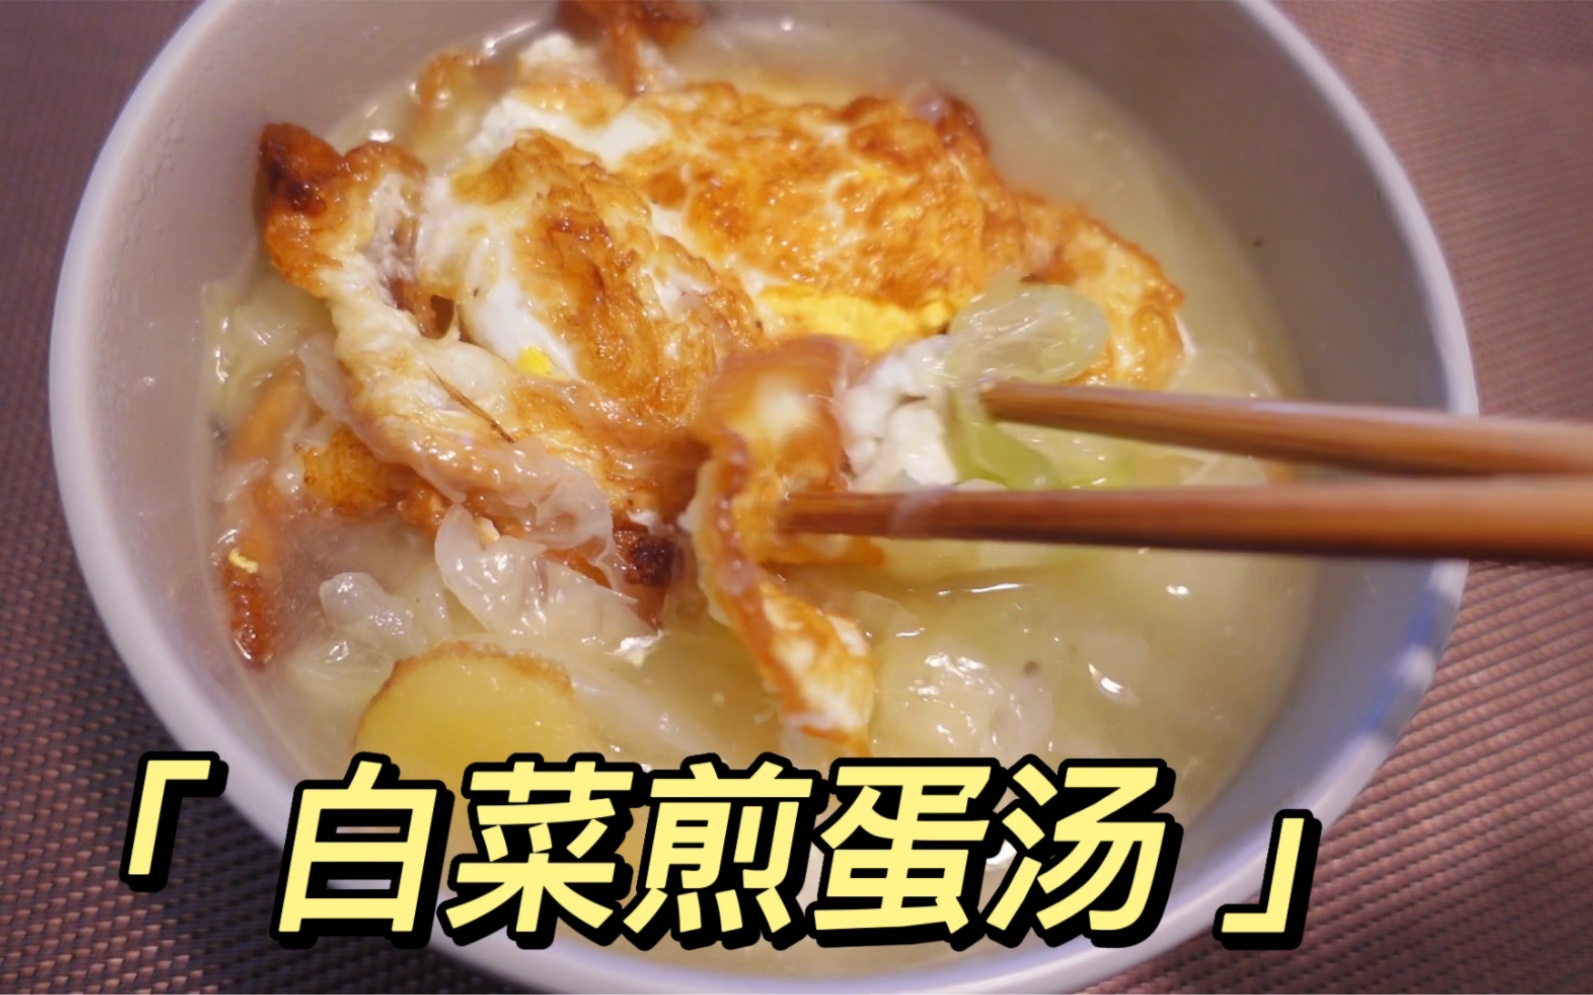 白萝卜丝煎蛋汤怎么做_白萝卜丝煎蛋汤的做法_阳春白雪小食光_豆果美食